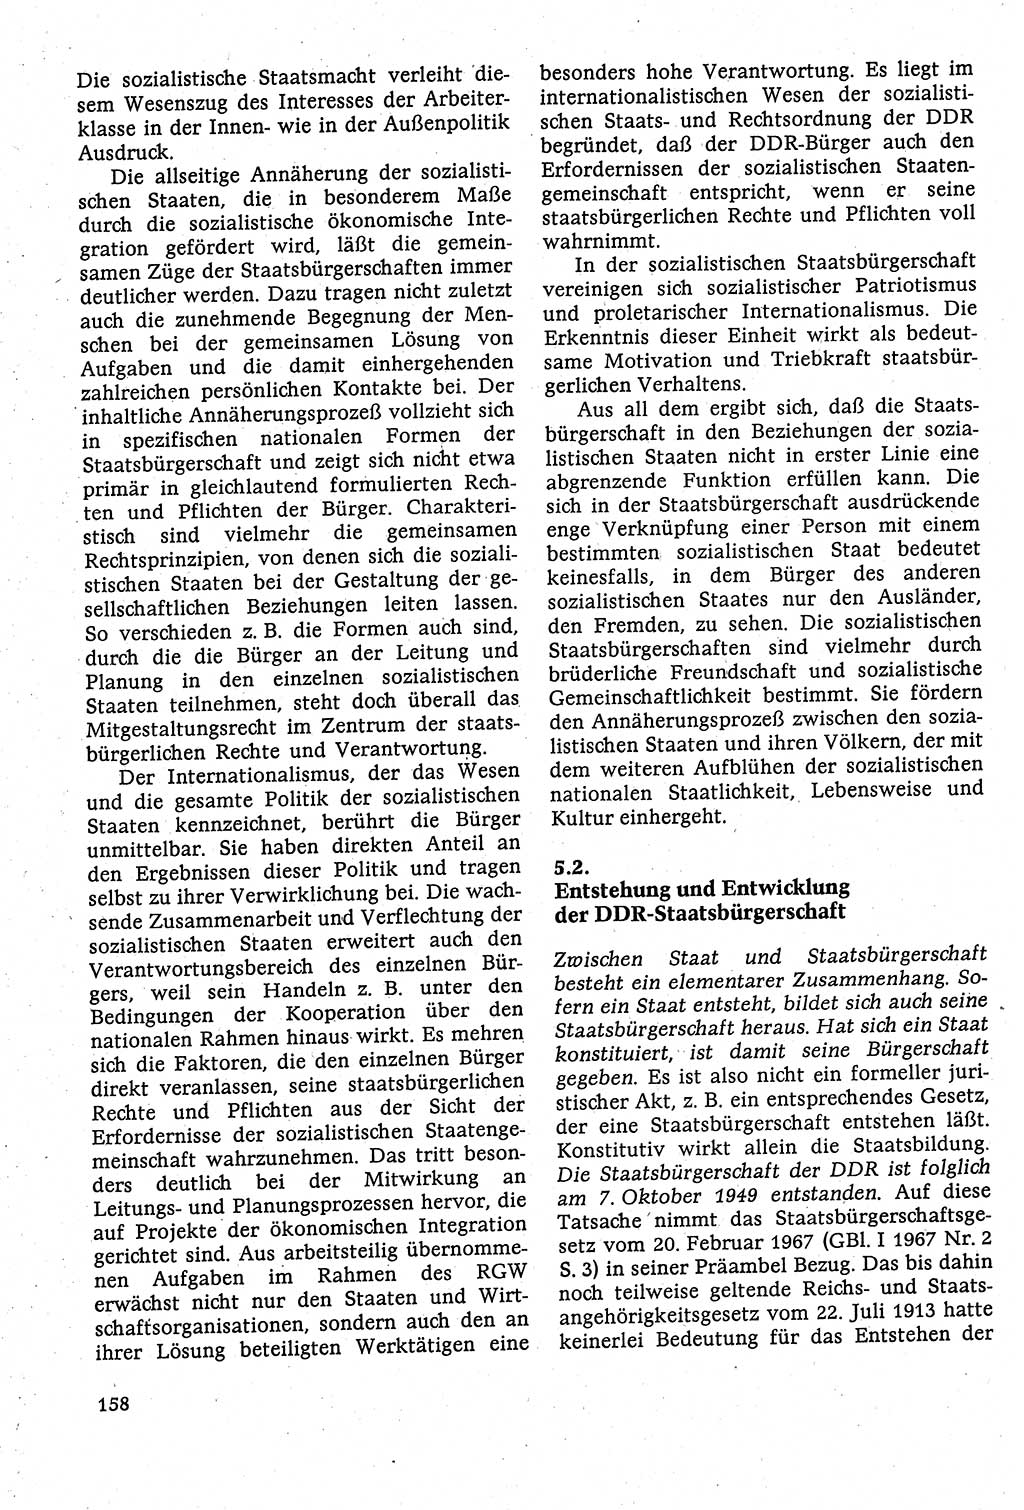 Staatsrecht der DDR [Deutsche Demokratische Republik (DDR)], Lehrbuch 1984, Seite 158 (St.-R. DDR Lb. 1984, S. 158)